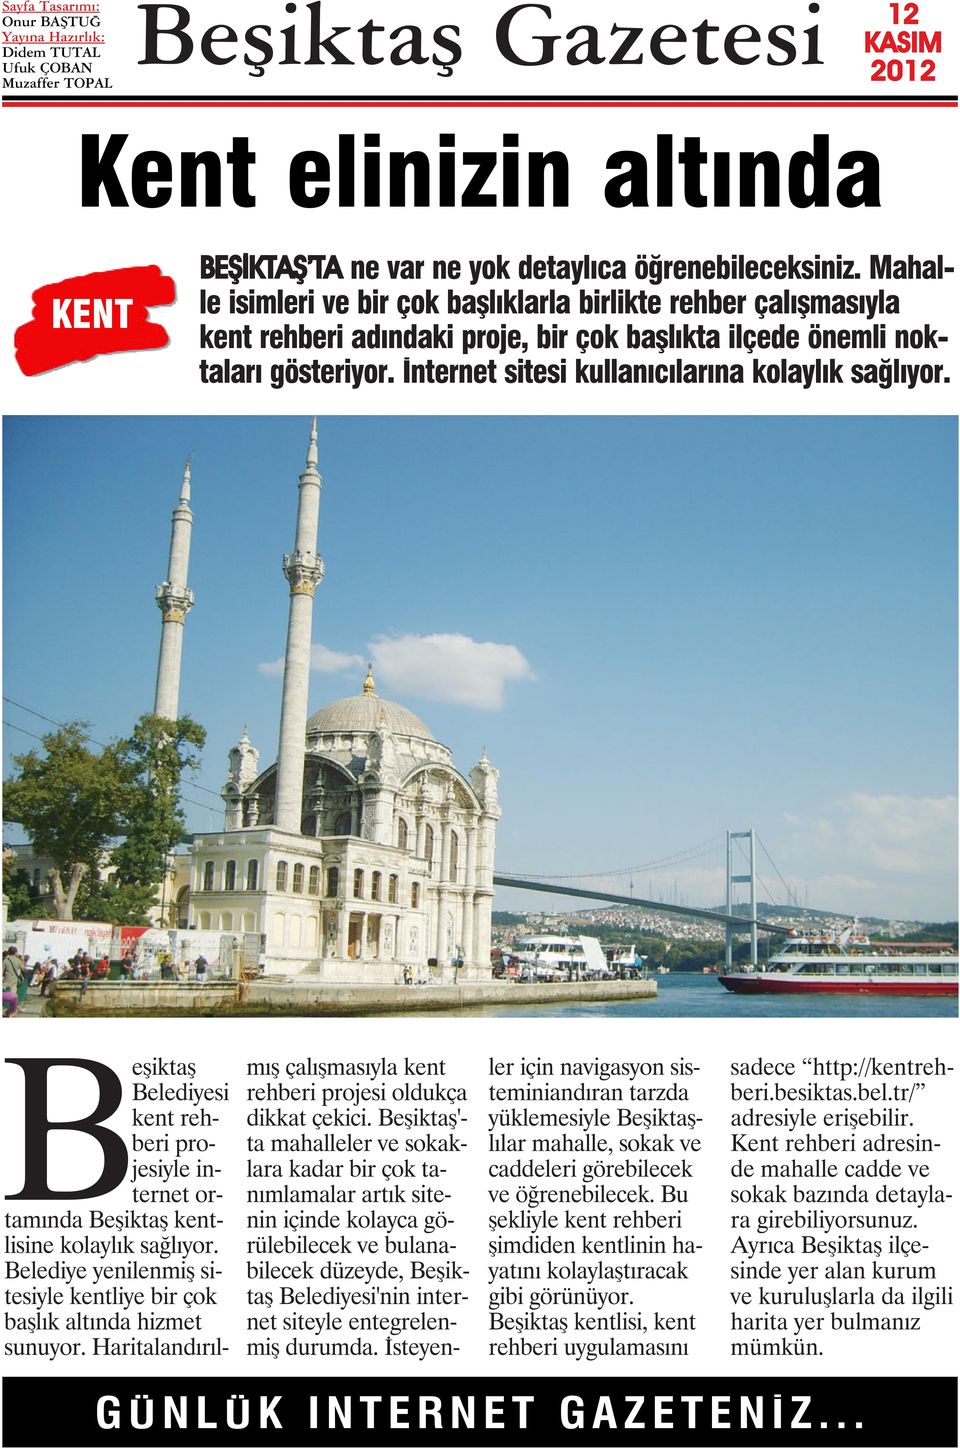 İnternet sitesi kullanıcılarına kolaylık sağlıyor. Beşiktaş Belediyesi kent rehberi projesiyle internet ortamında Beşiktaş kentlisine kolaylık sağlıyor.